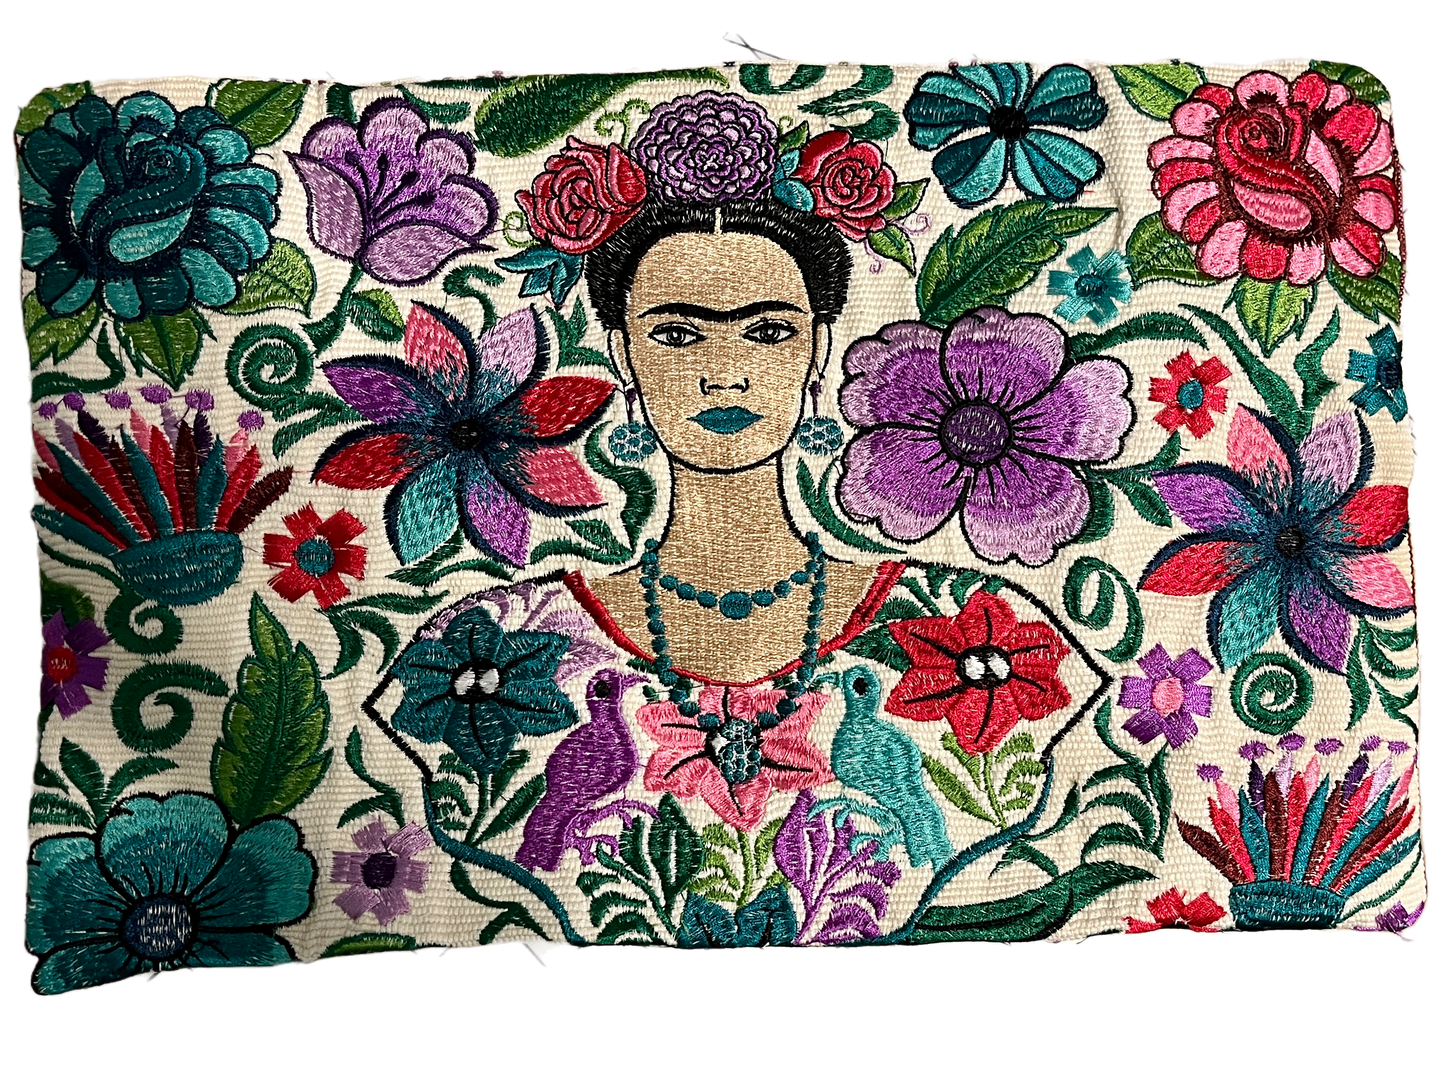 Frida Kahlo Throw Pillow Cover